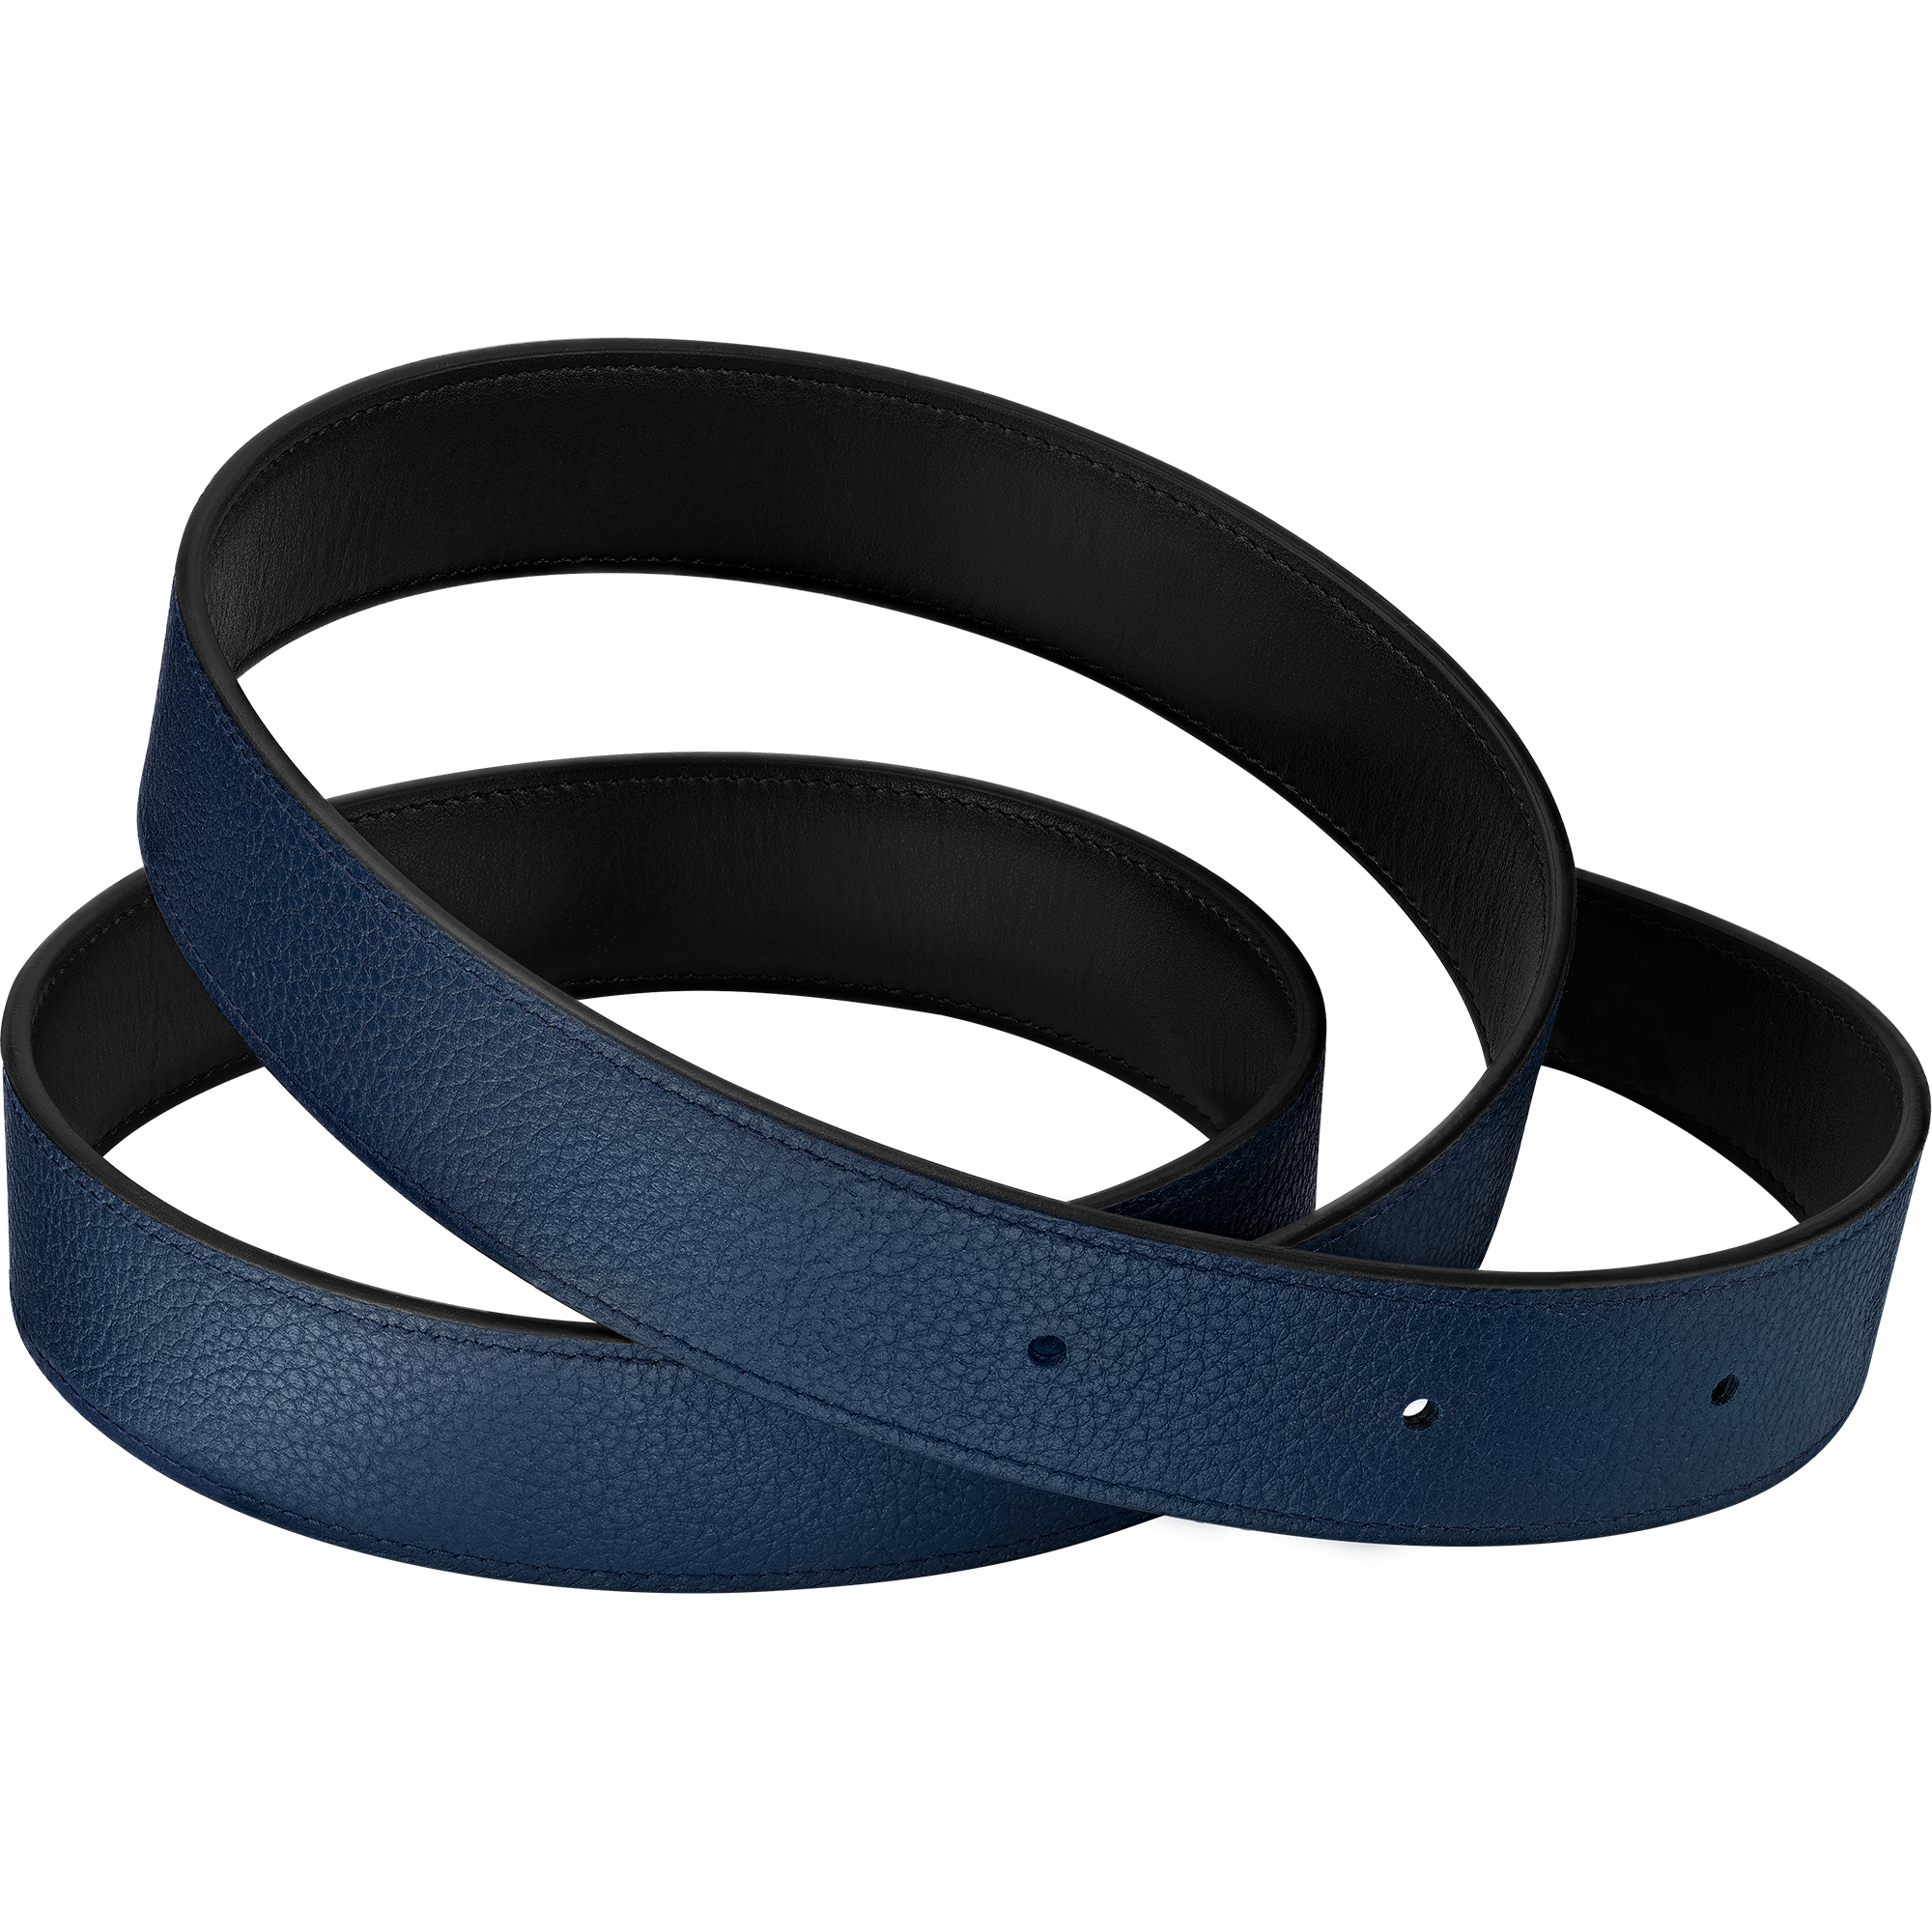 Fine Leather Belt, Black / Blue - 7070910002